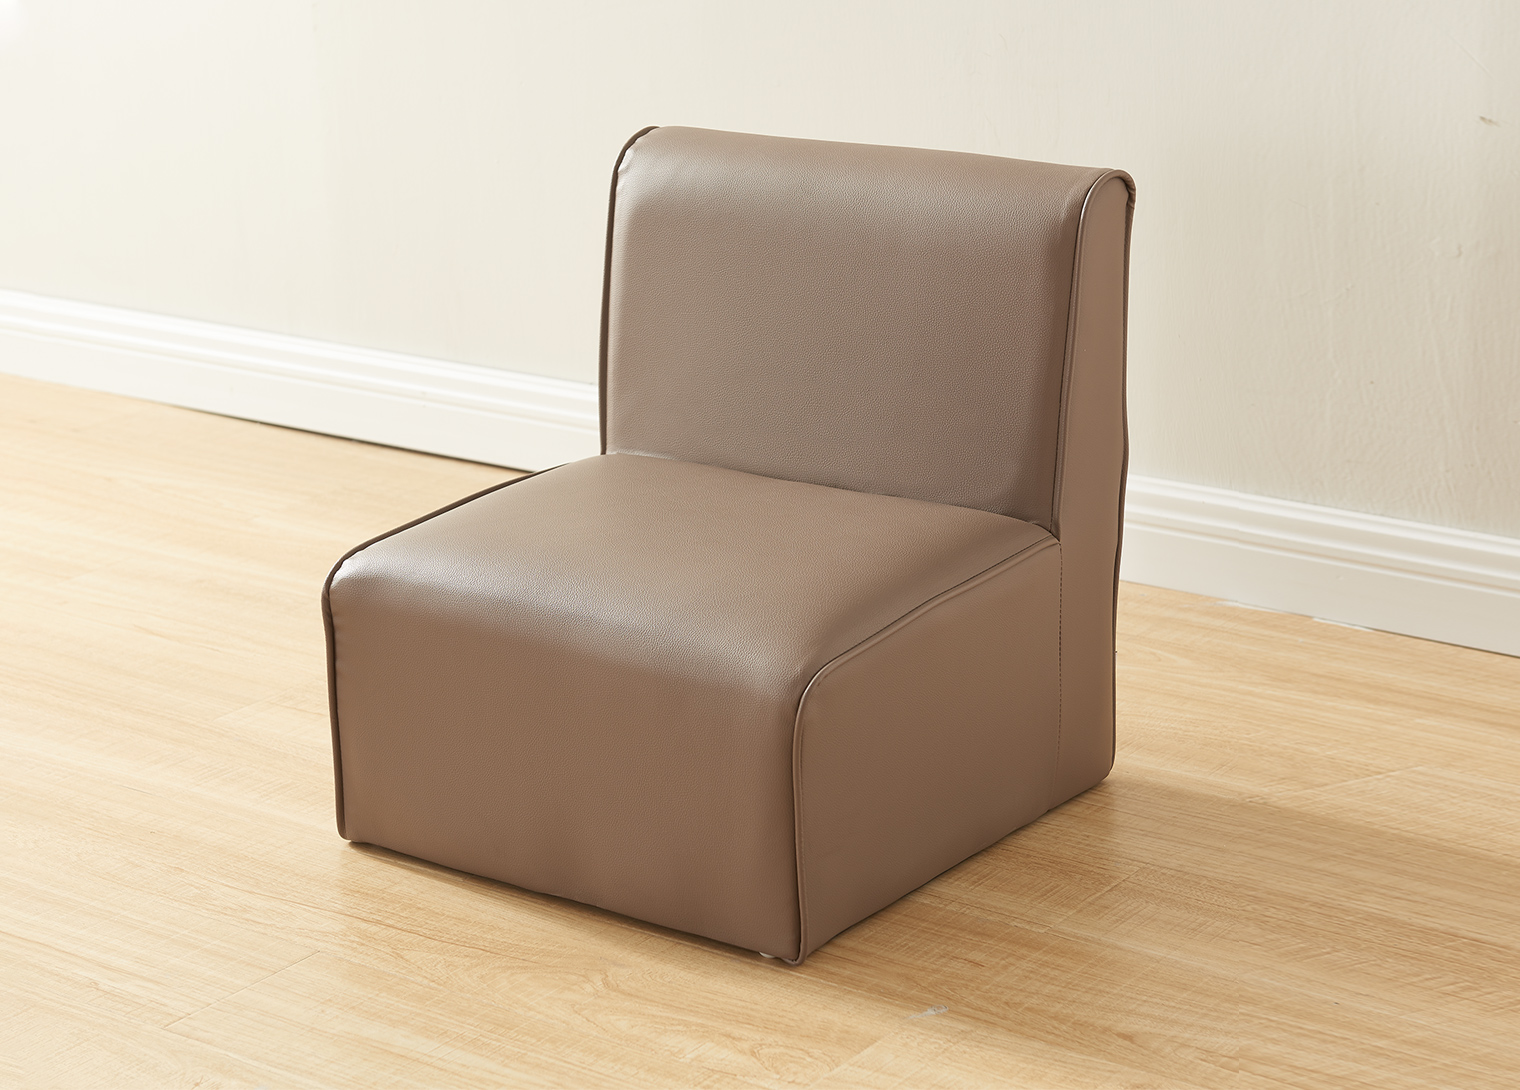 Modular Kids Sofa -  1-Seat Chair - Neutral